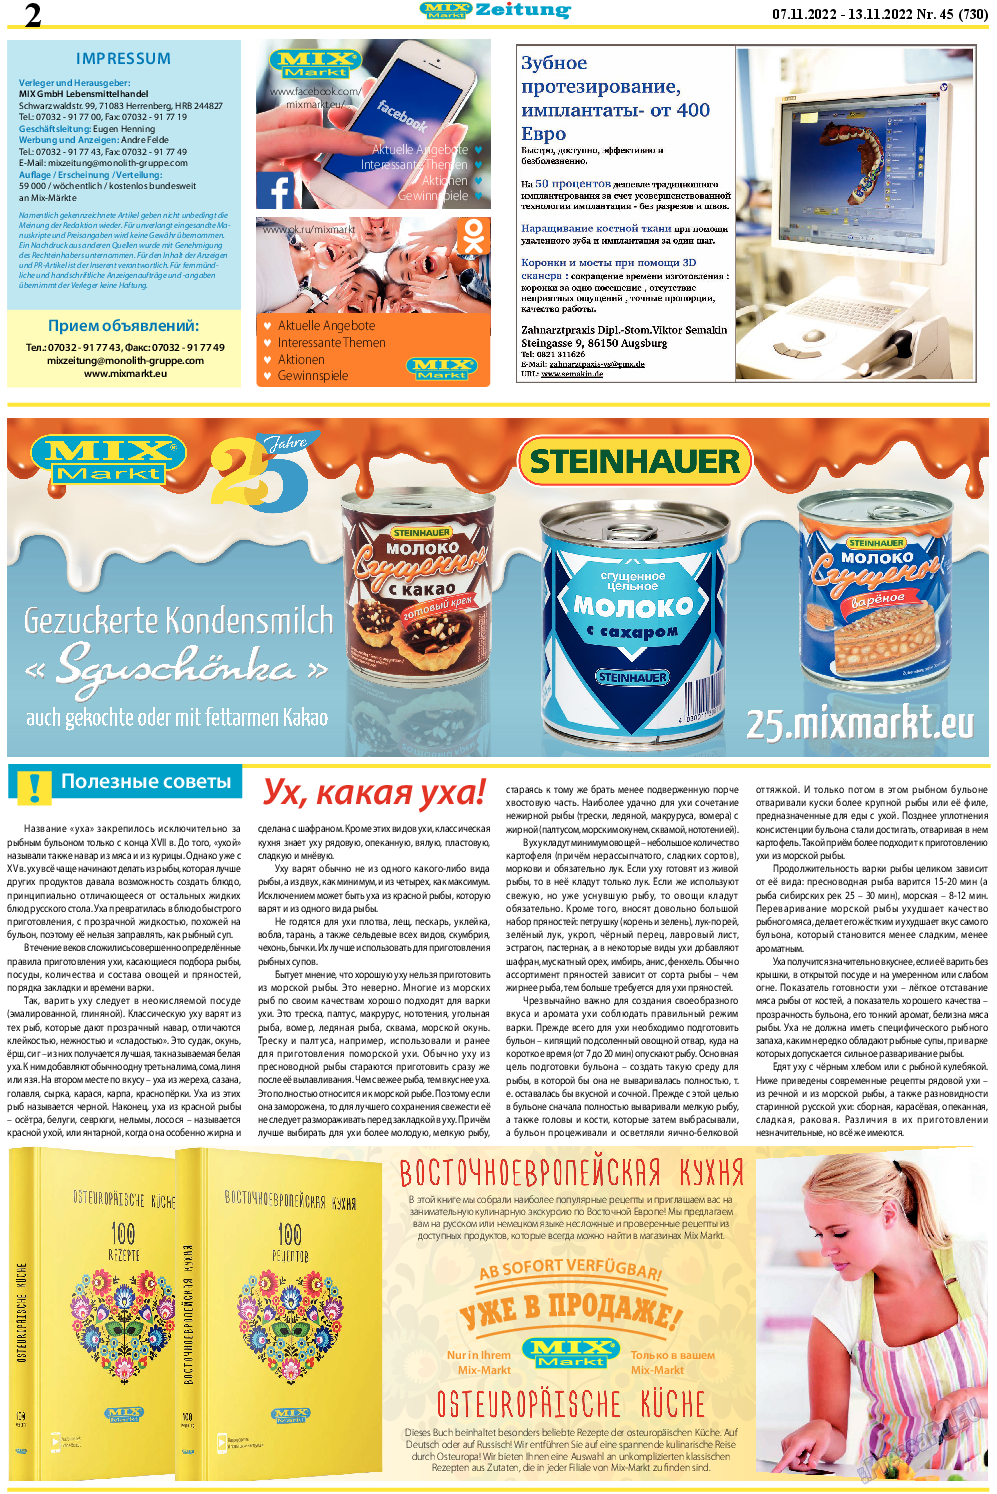 MIX-Markt Zeitung, газета. 2022 №45 стр.2